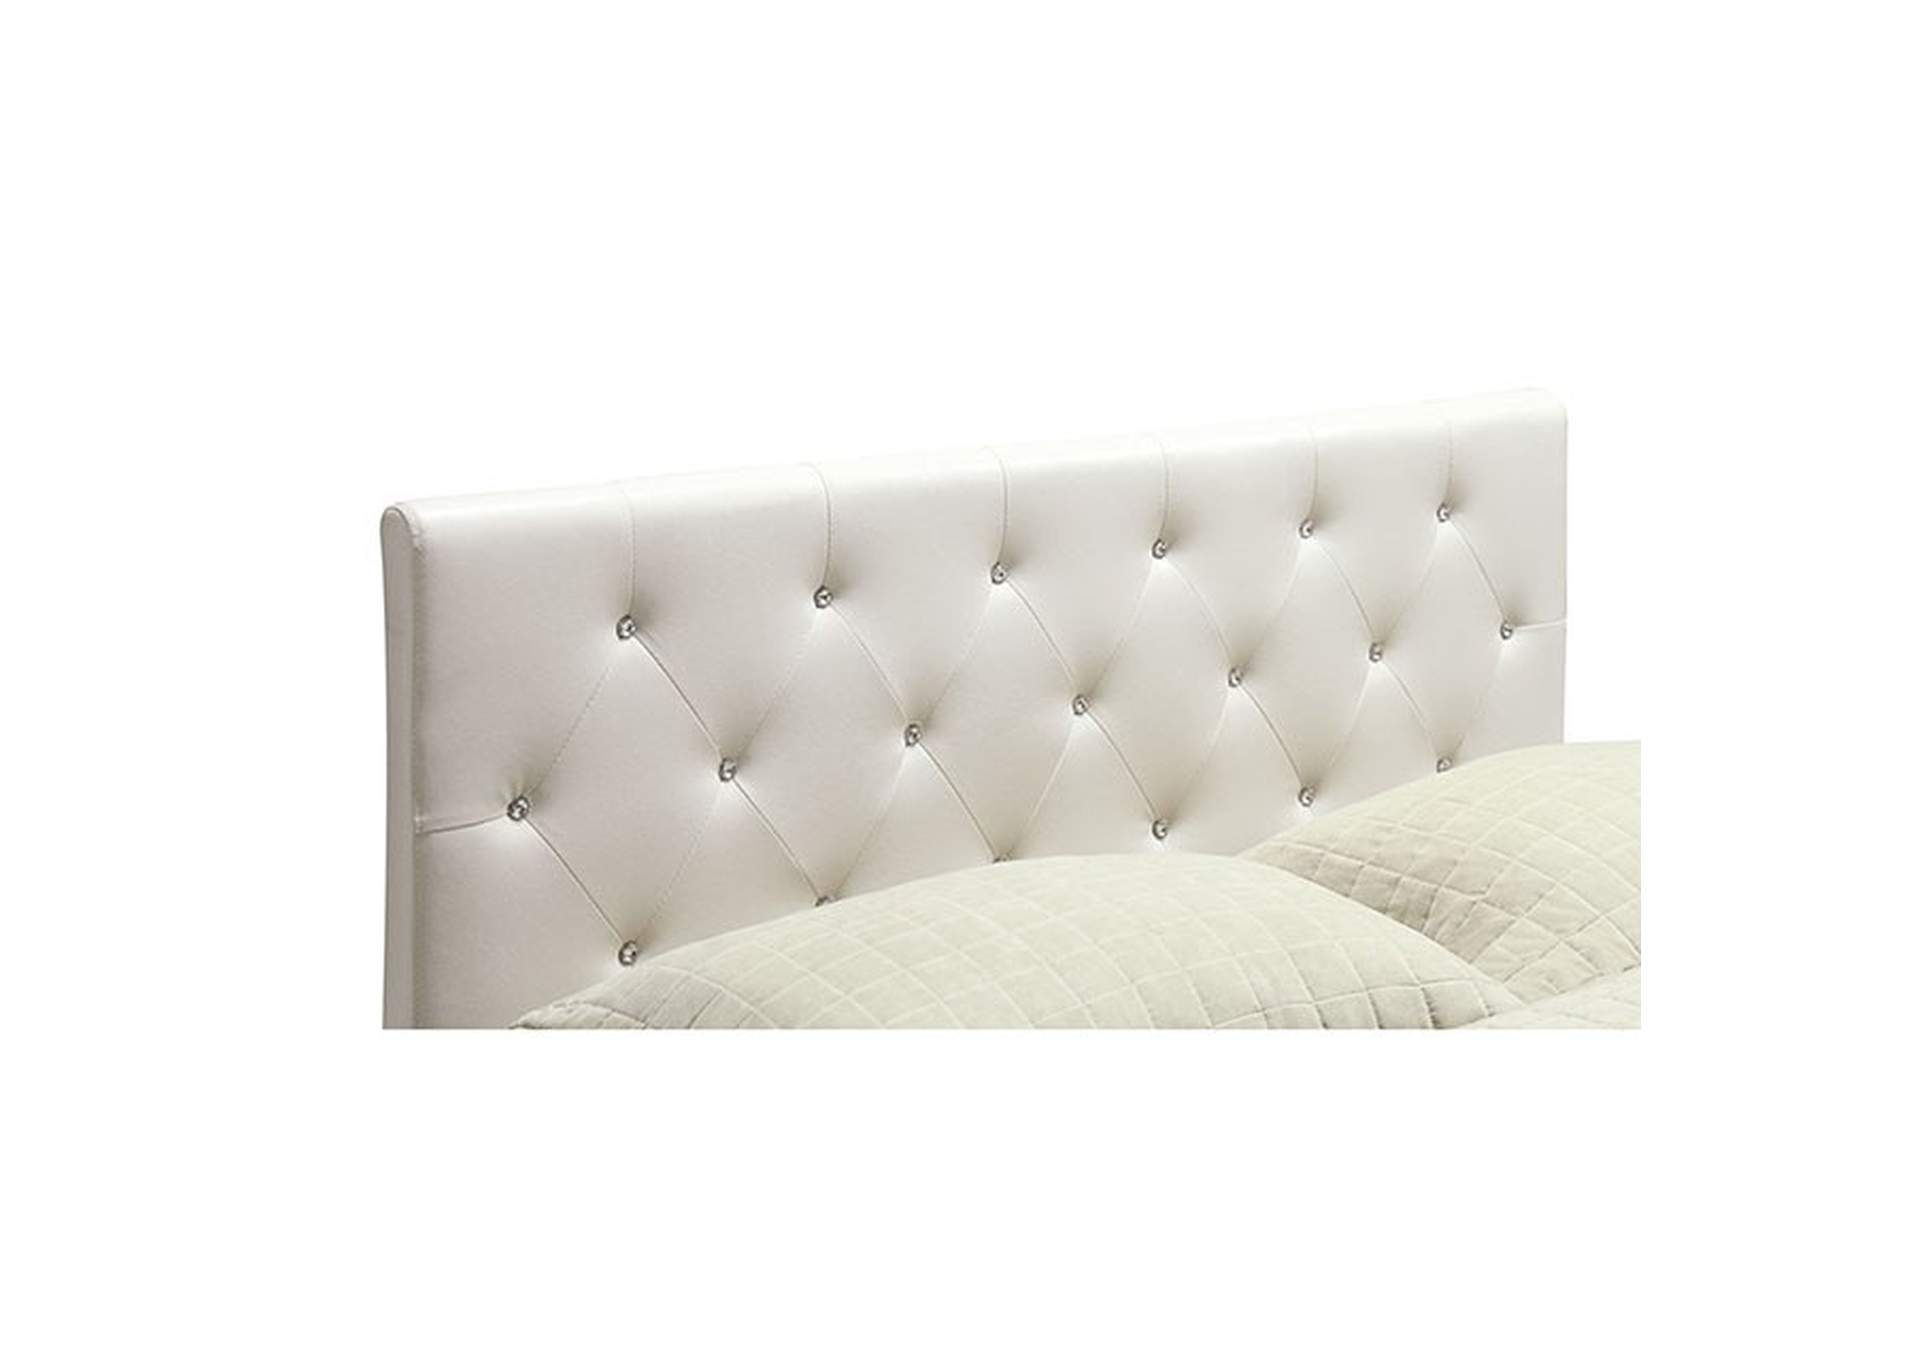 Velen Queen Bed,Furniture of America